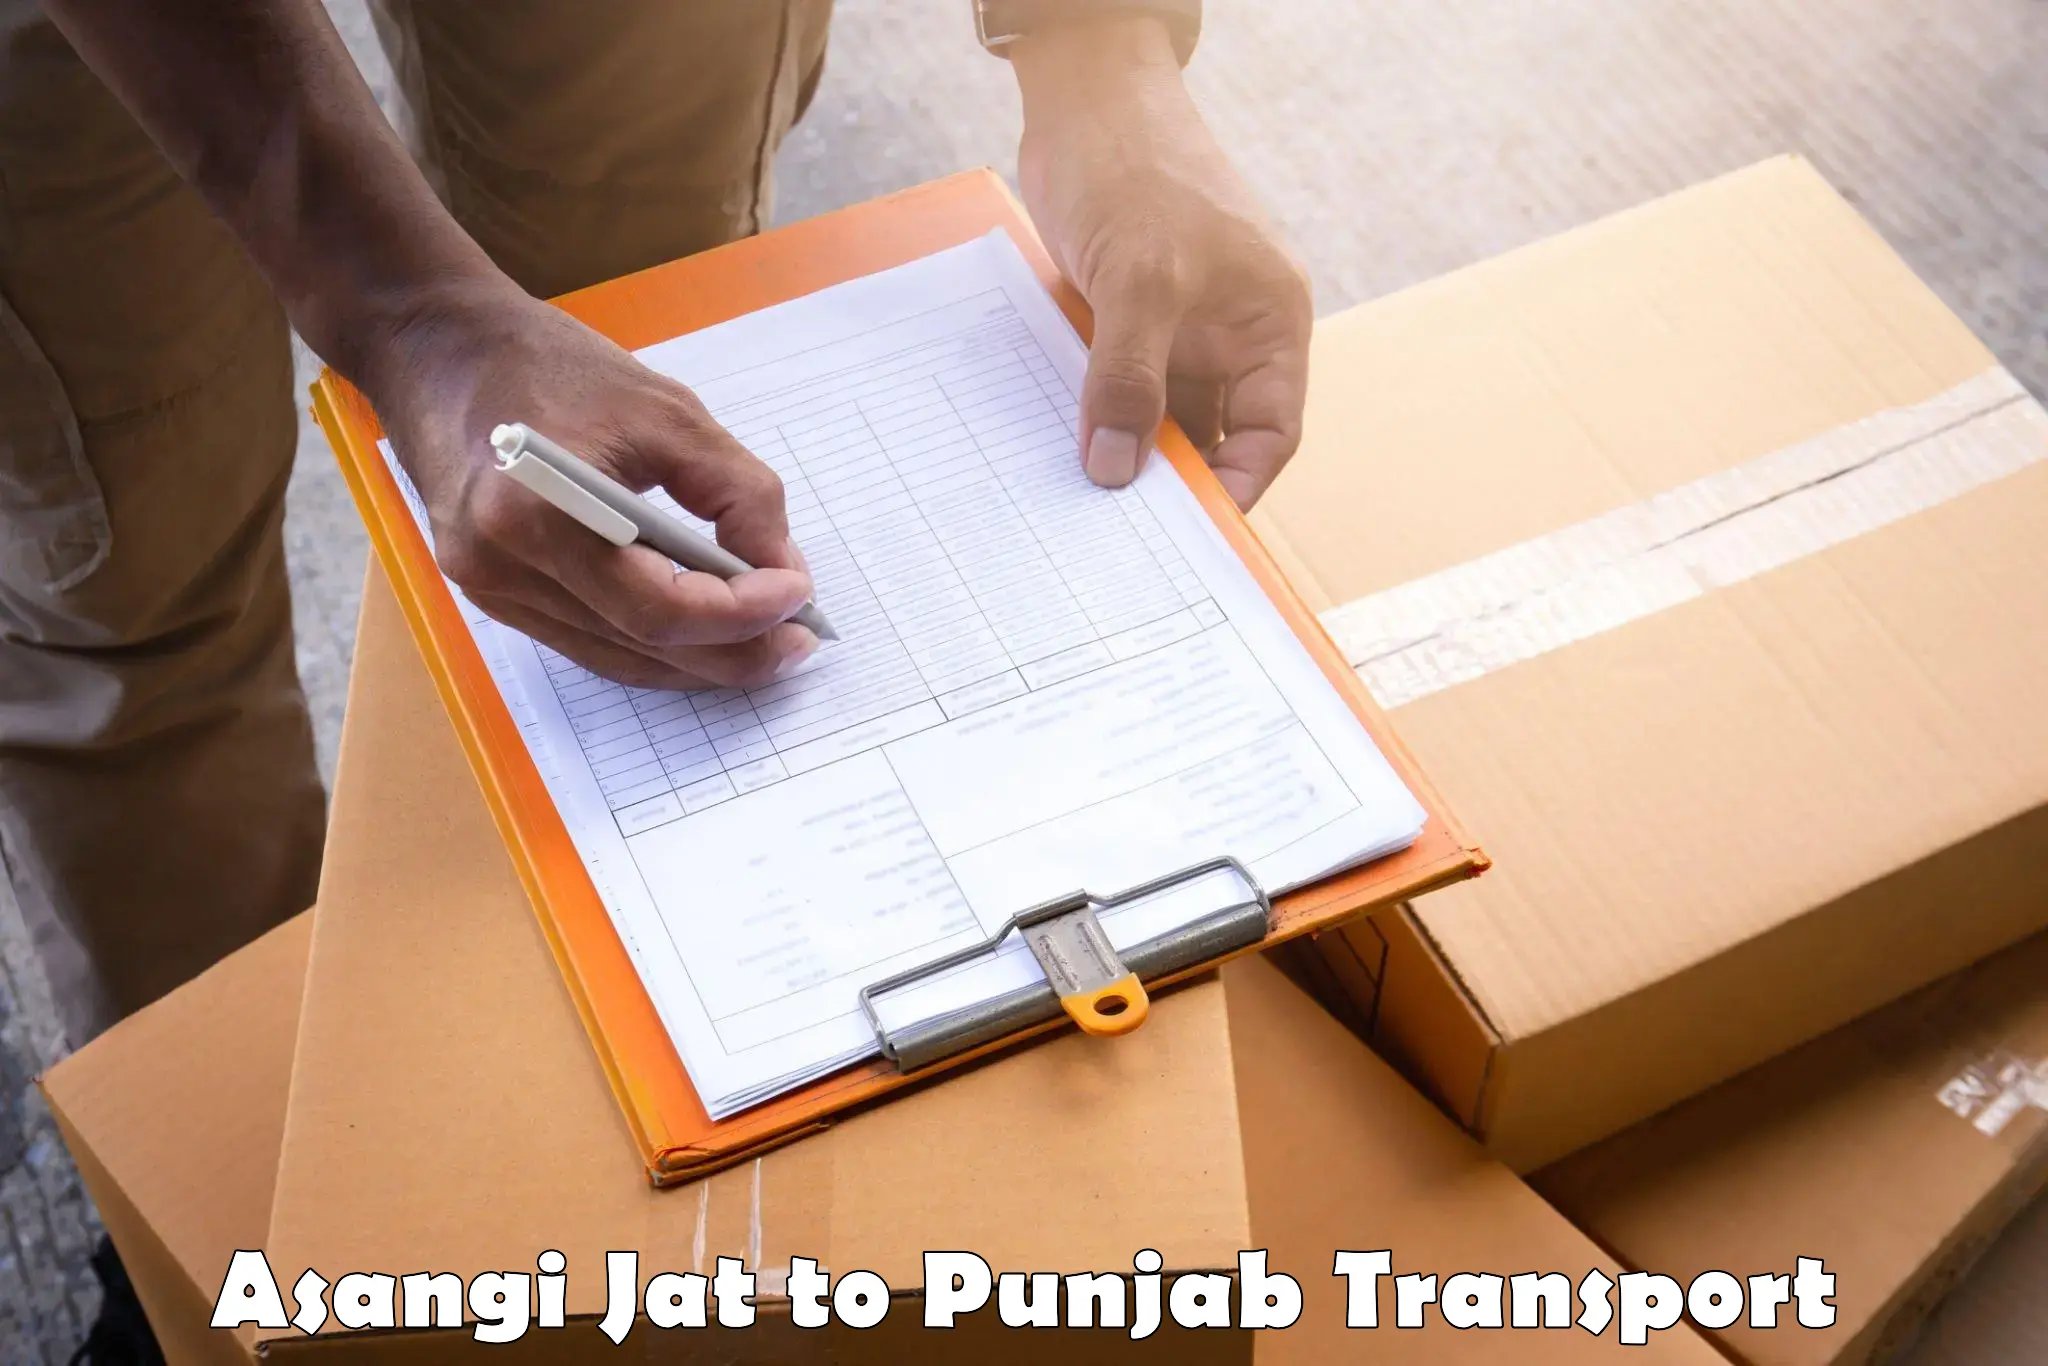 Container transport service Asangi Jat to Rupnagar